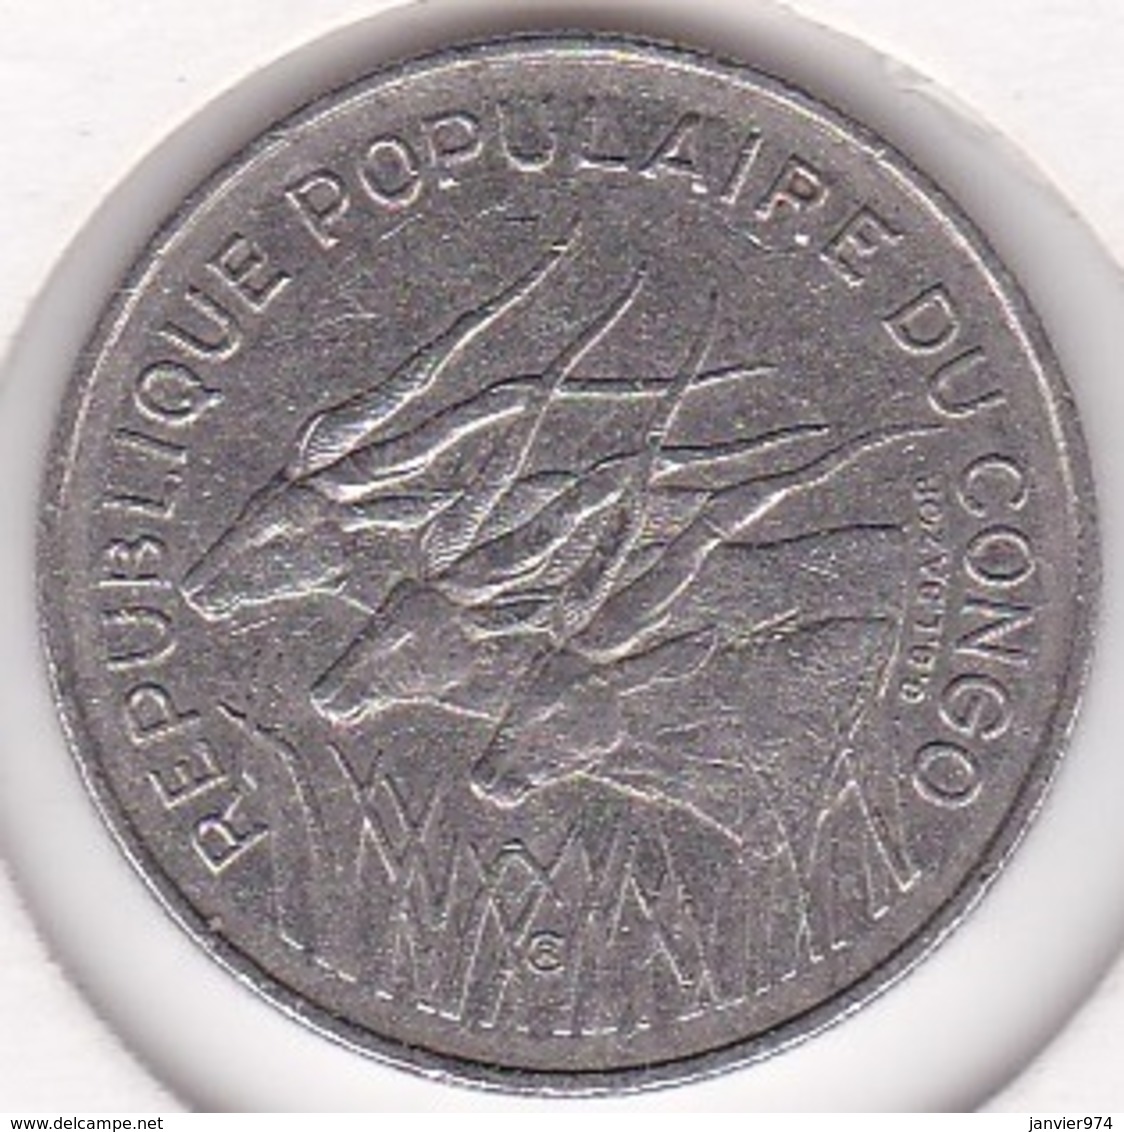 Republique Populaire Du Congo. 100 Francs 1971, En Nickel. KM# 1 - Congo (Republic 1960)